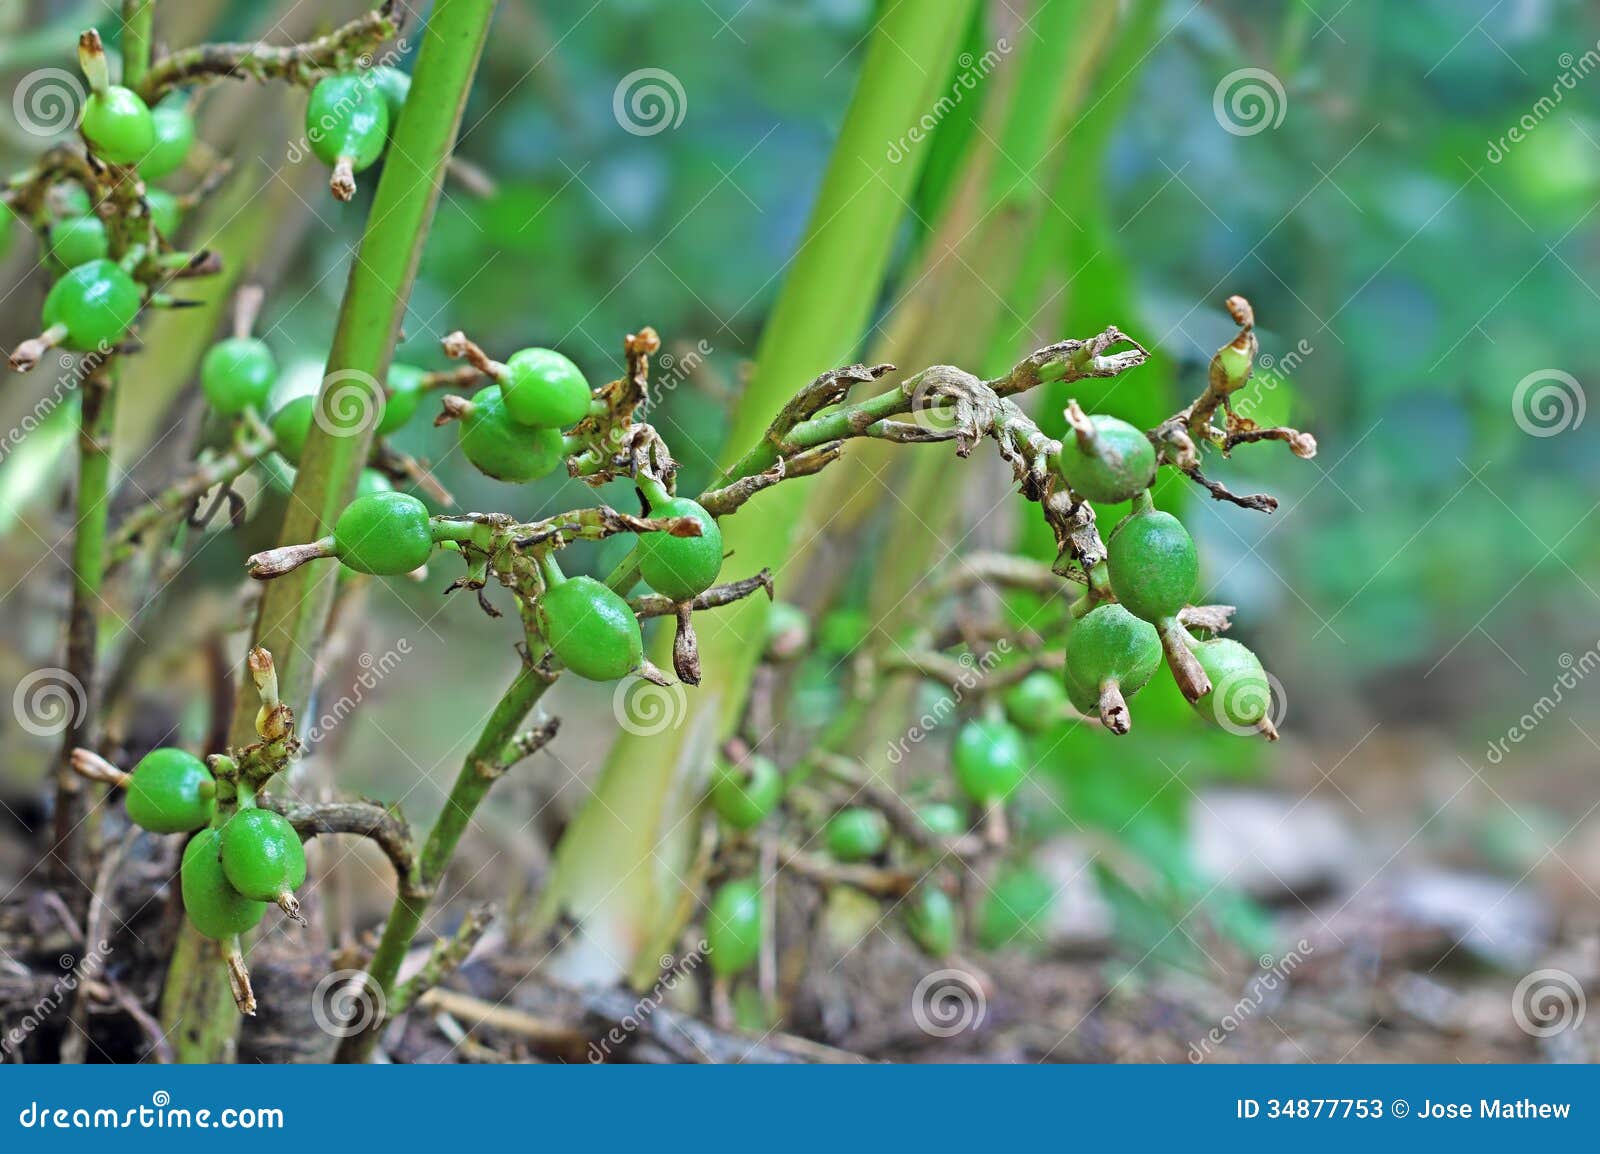 unripe cardamom pods in plant